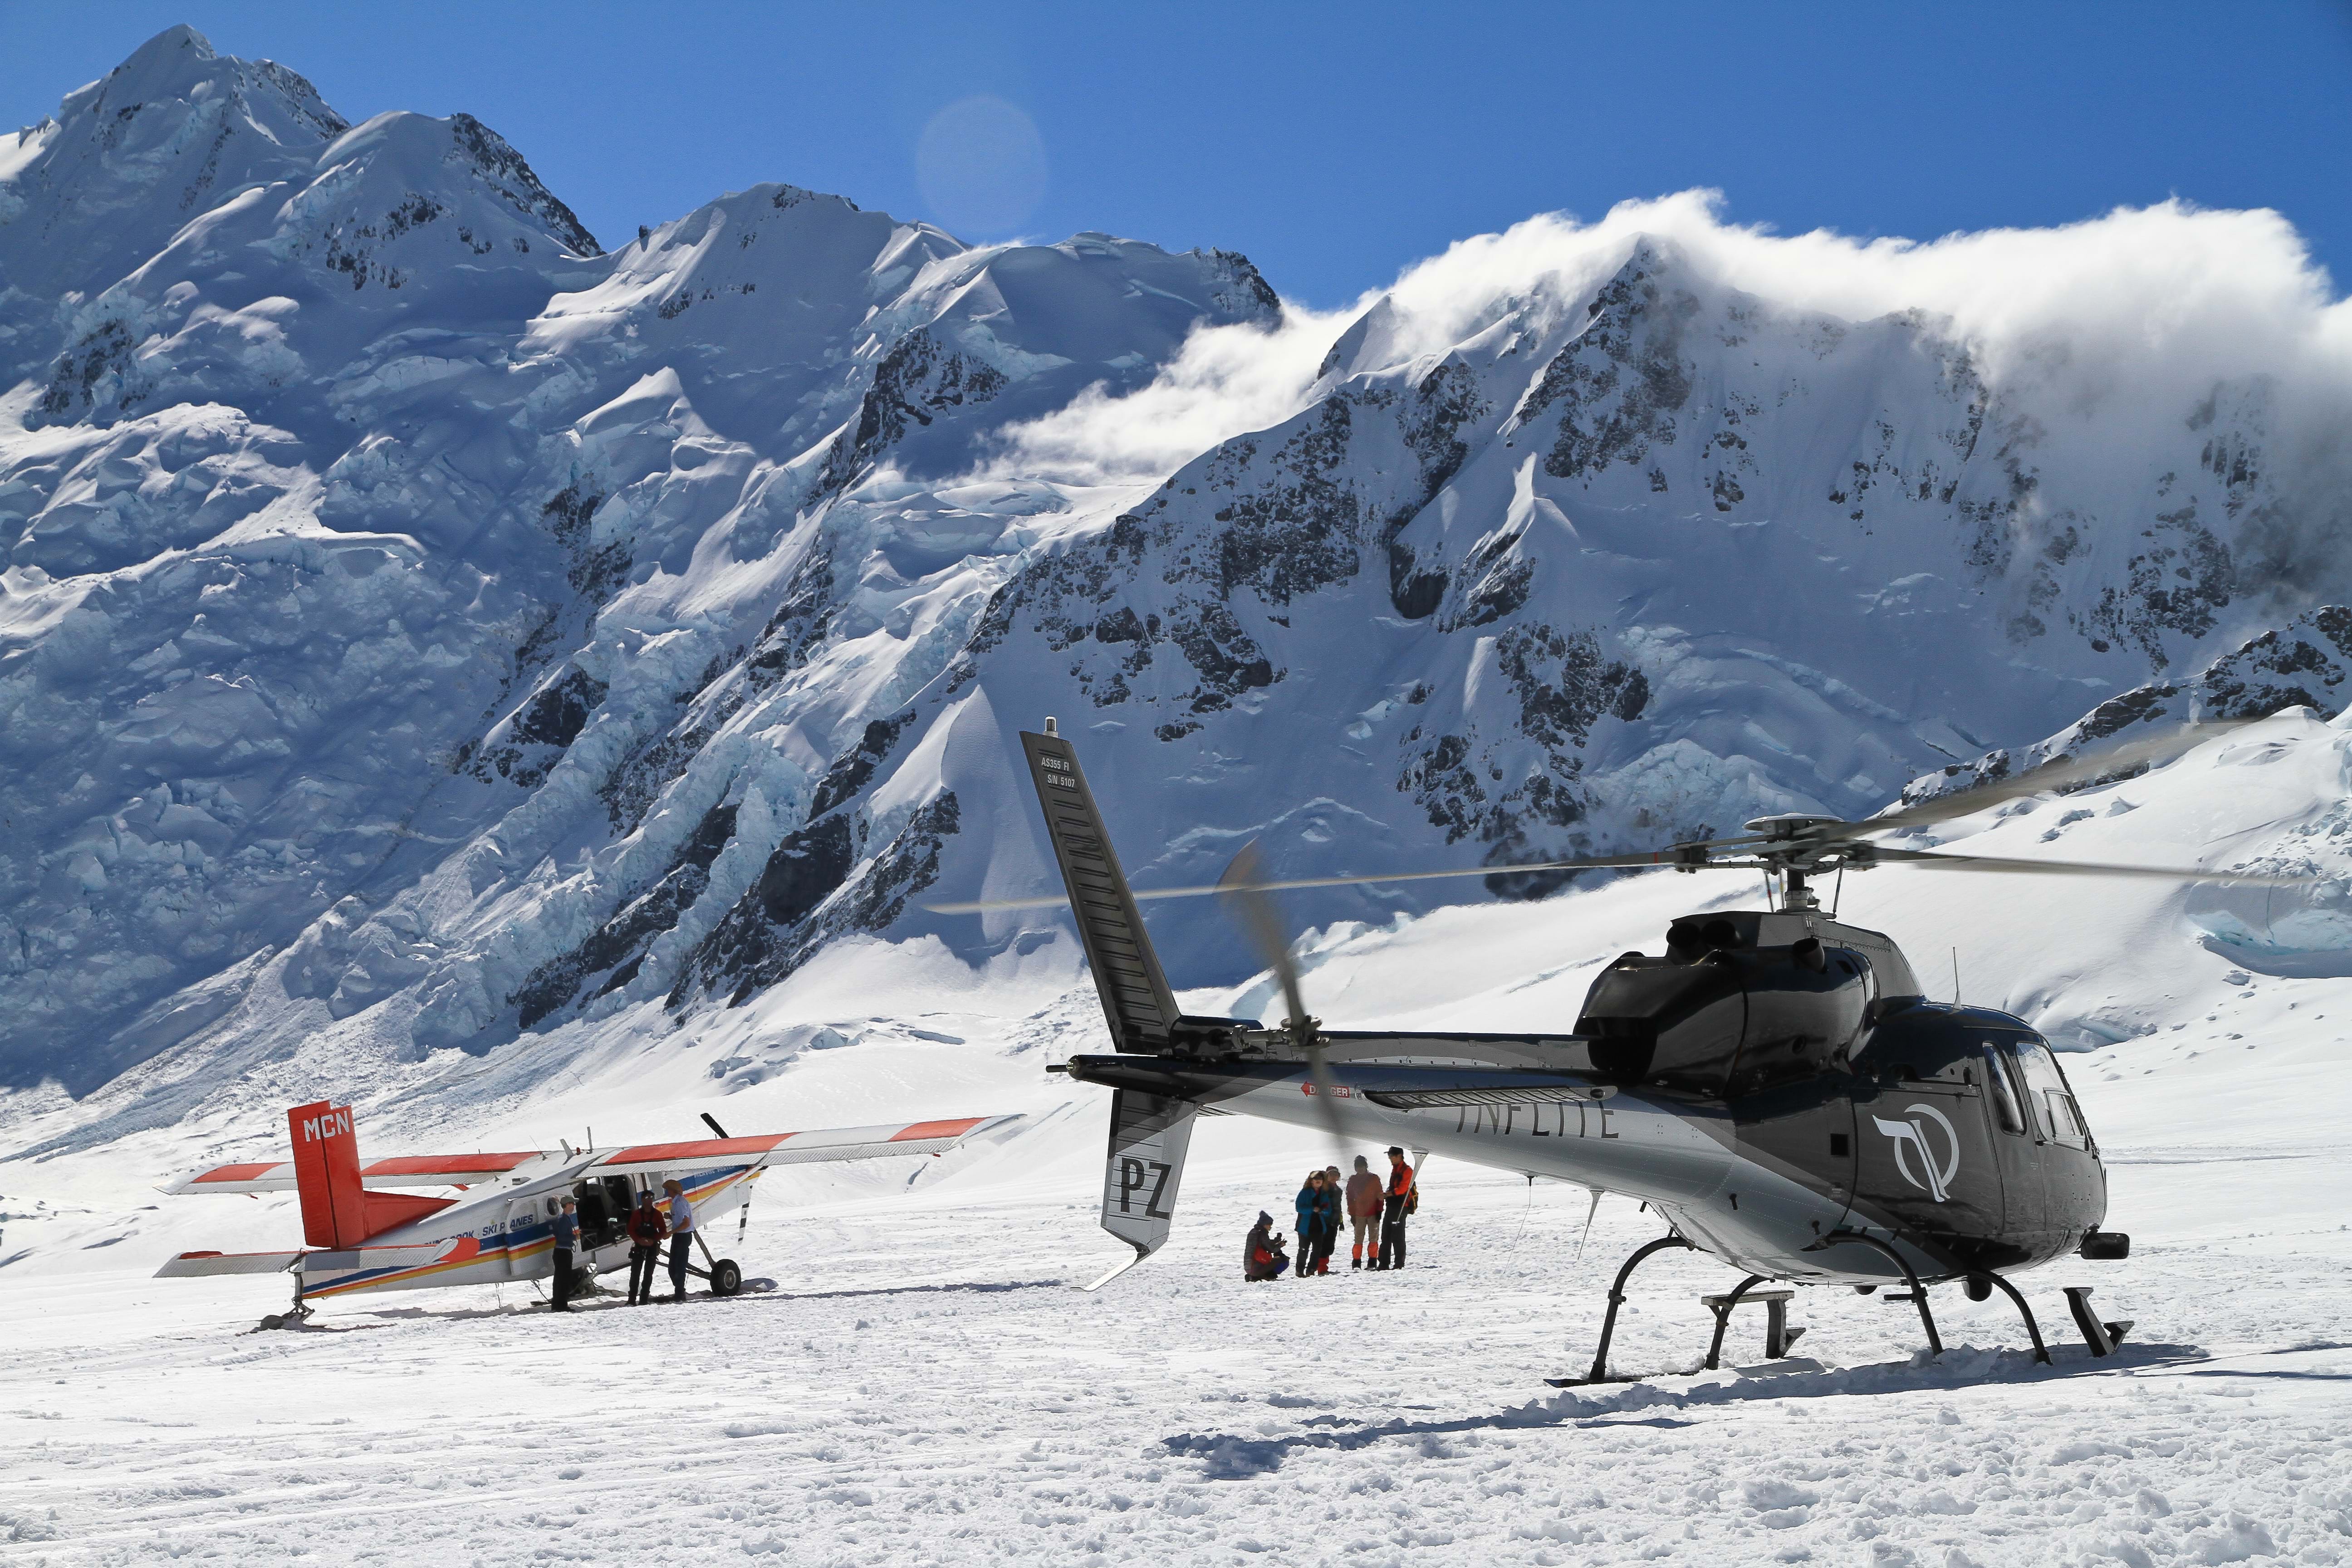 Aoraki Mt Cook helicopter or ski plane tour